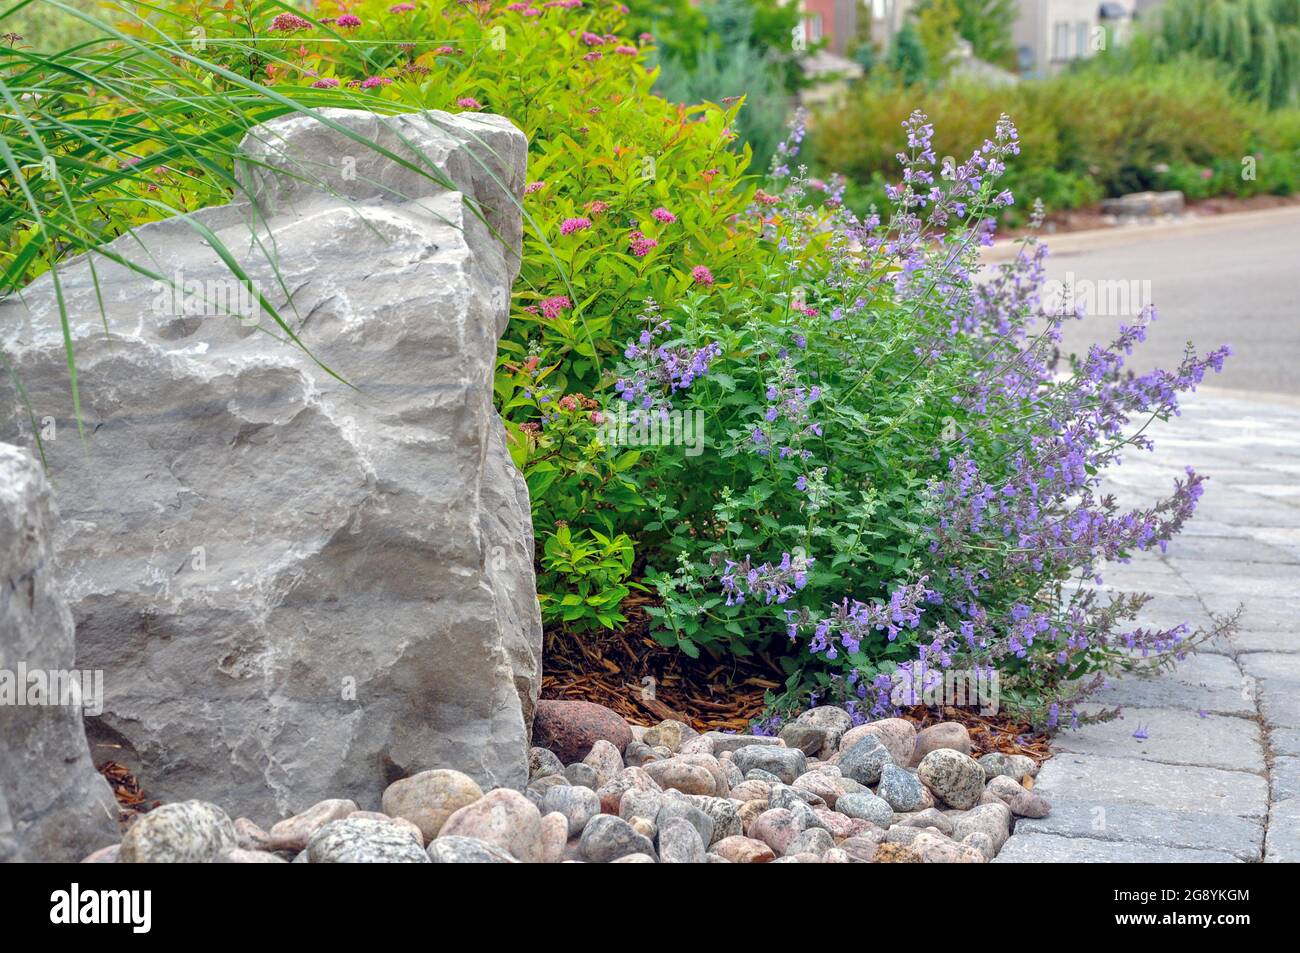 Splendido giardino di fondo mostra una grande roccia con più piccolo fiume roccia, porpora fiore nepeta o menta, e pavimenti grigi. Foto Stock